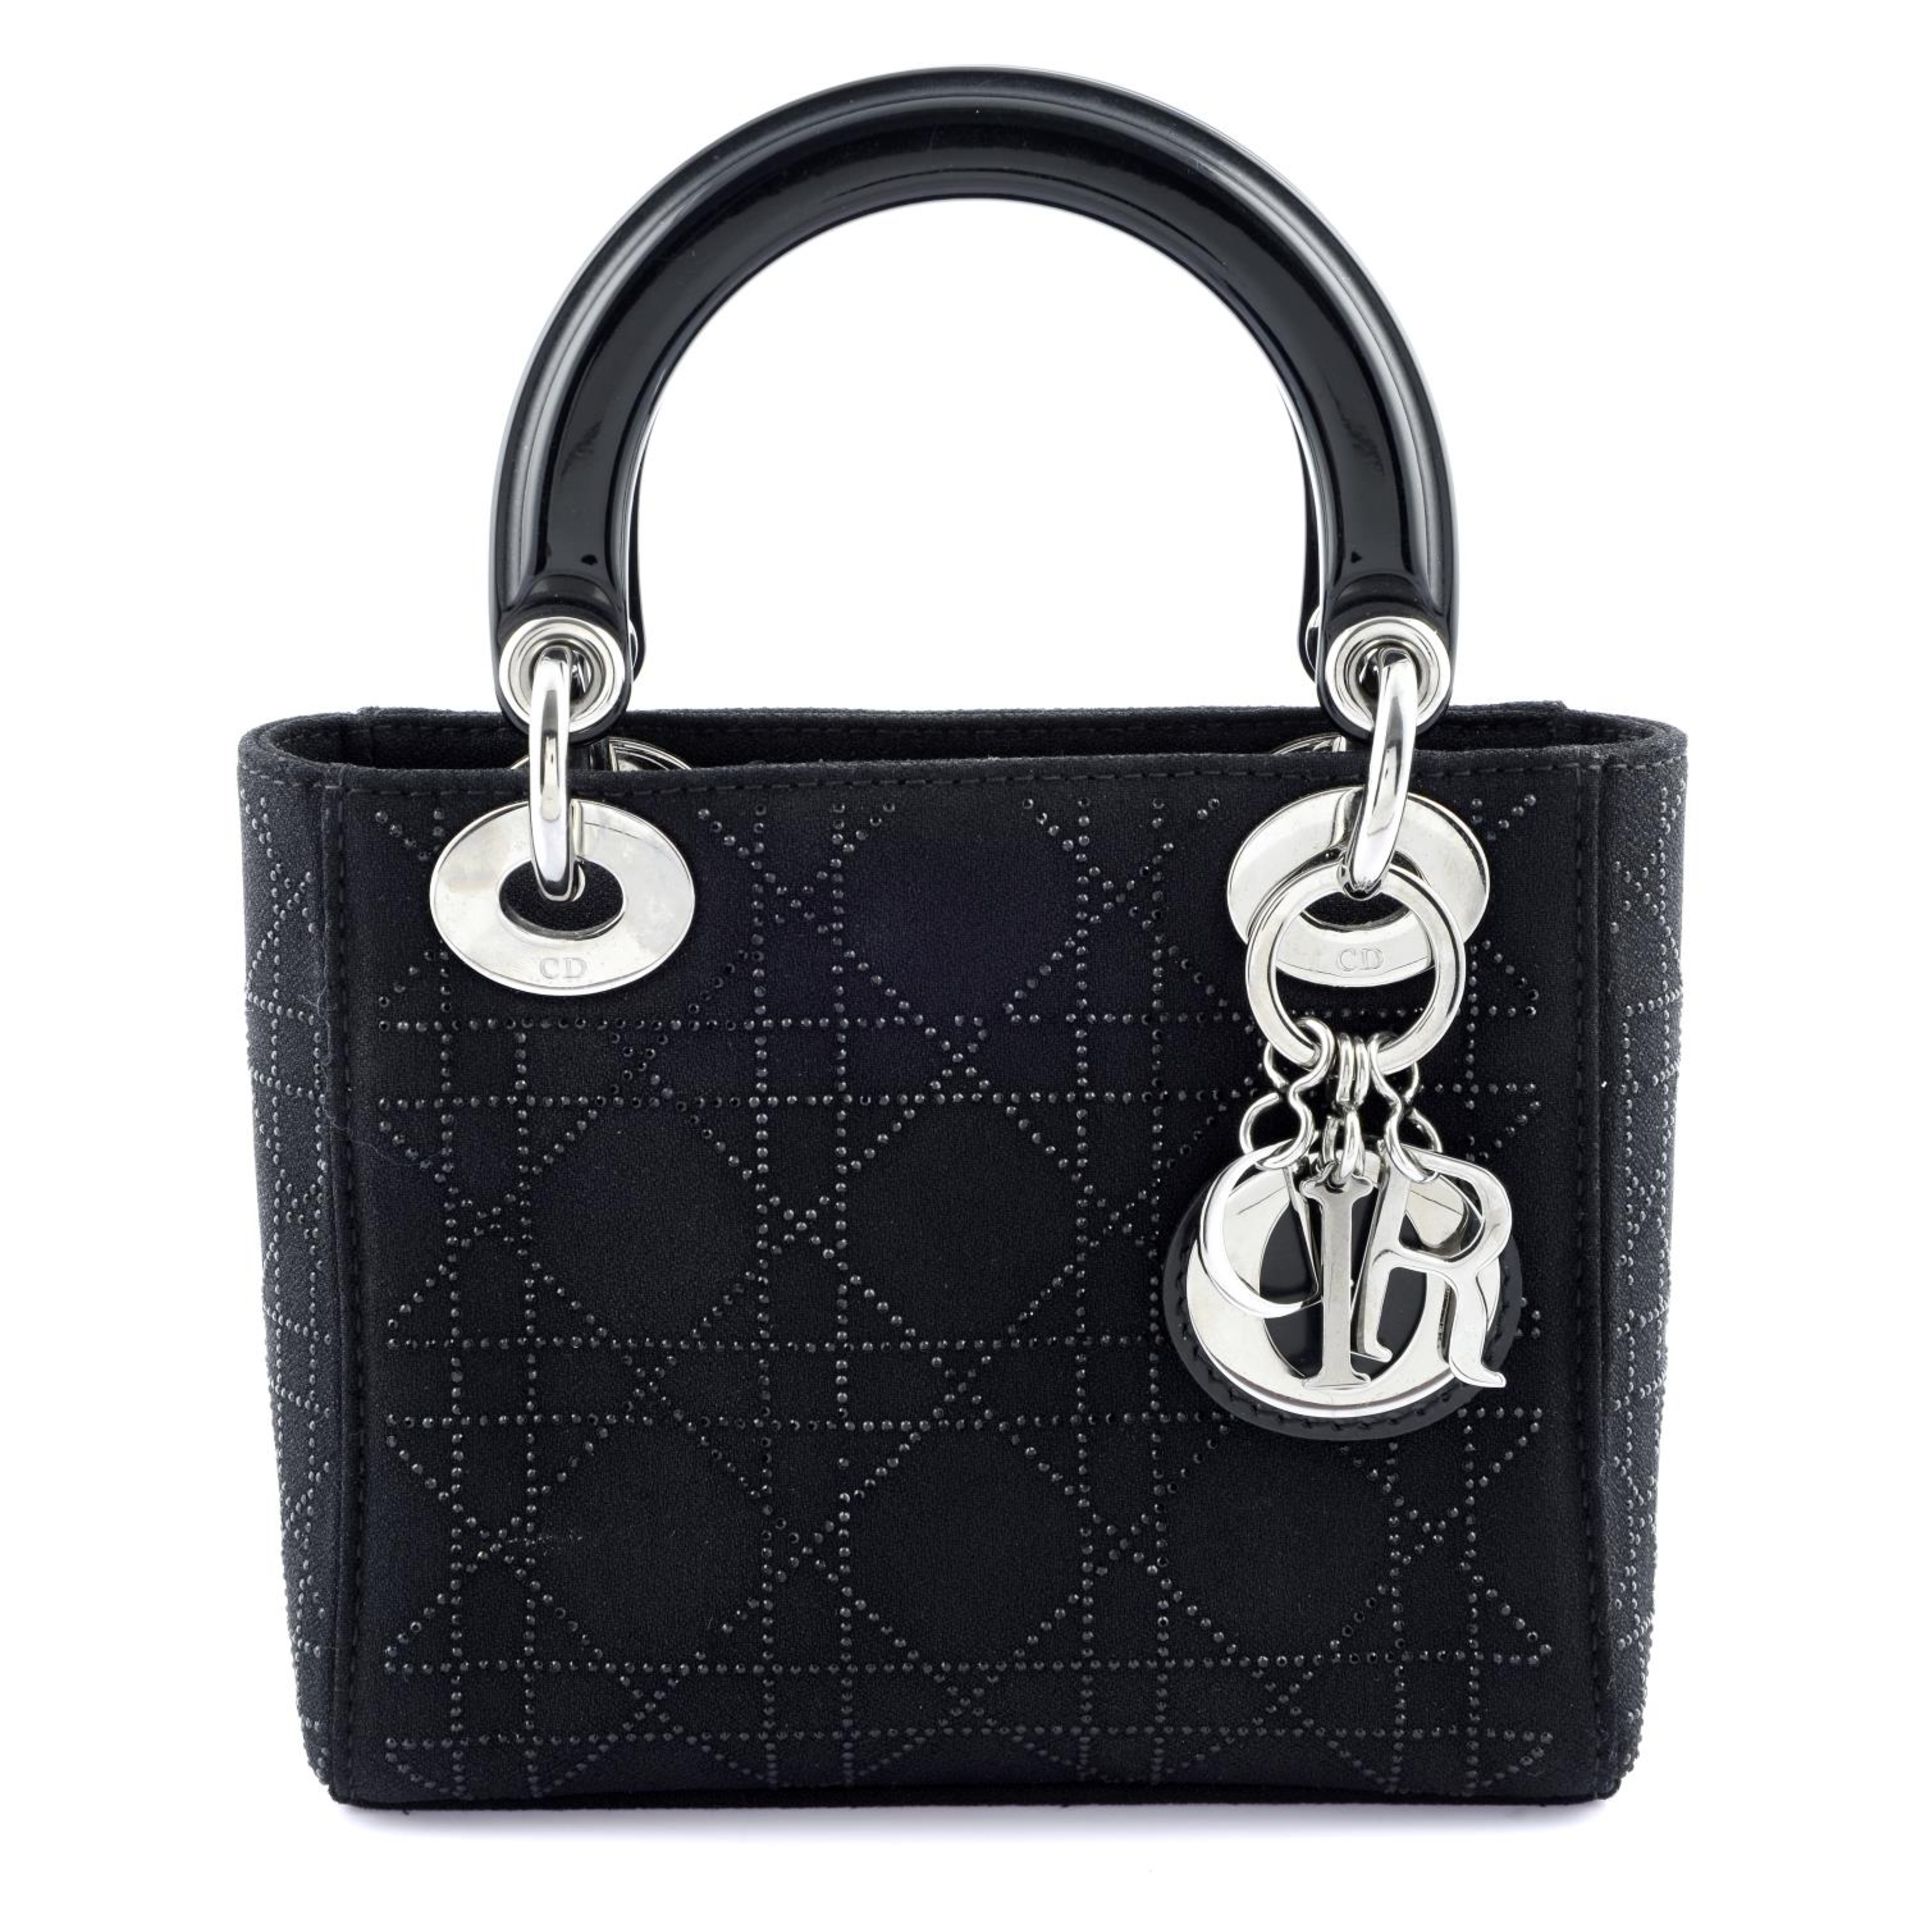 CHRISTIAN DIOR - a limited edition Mini Lady Dior handbag.